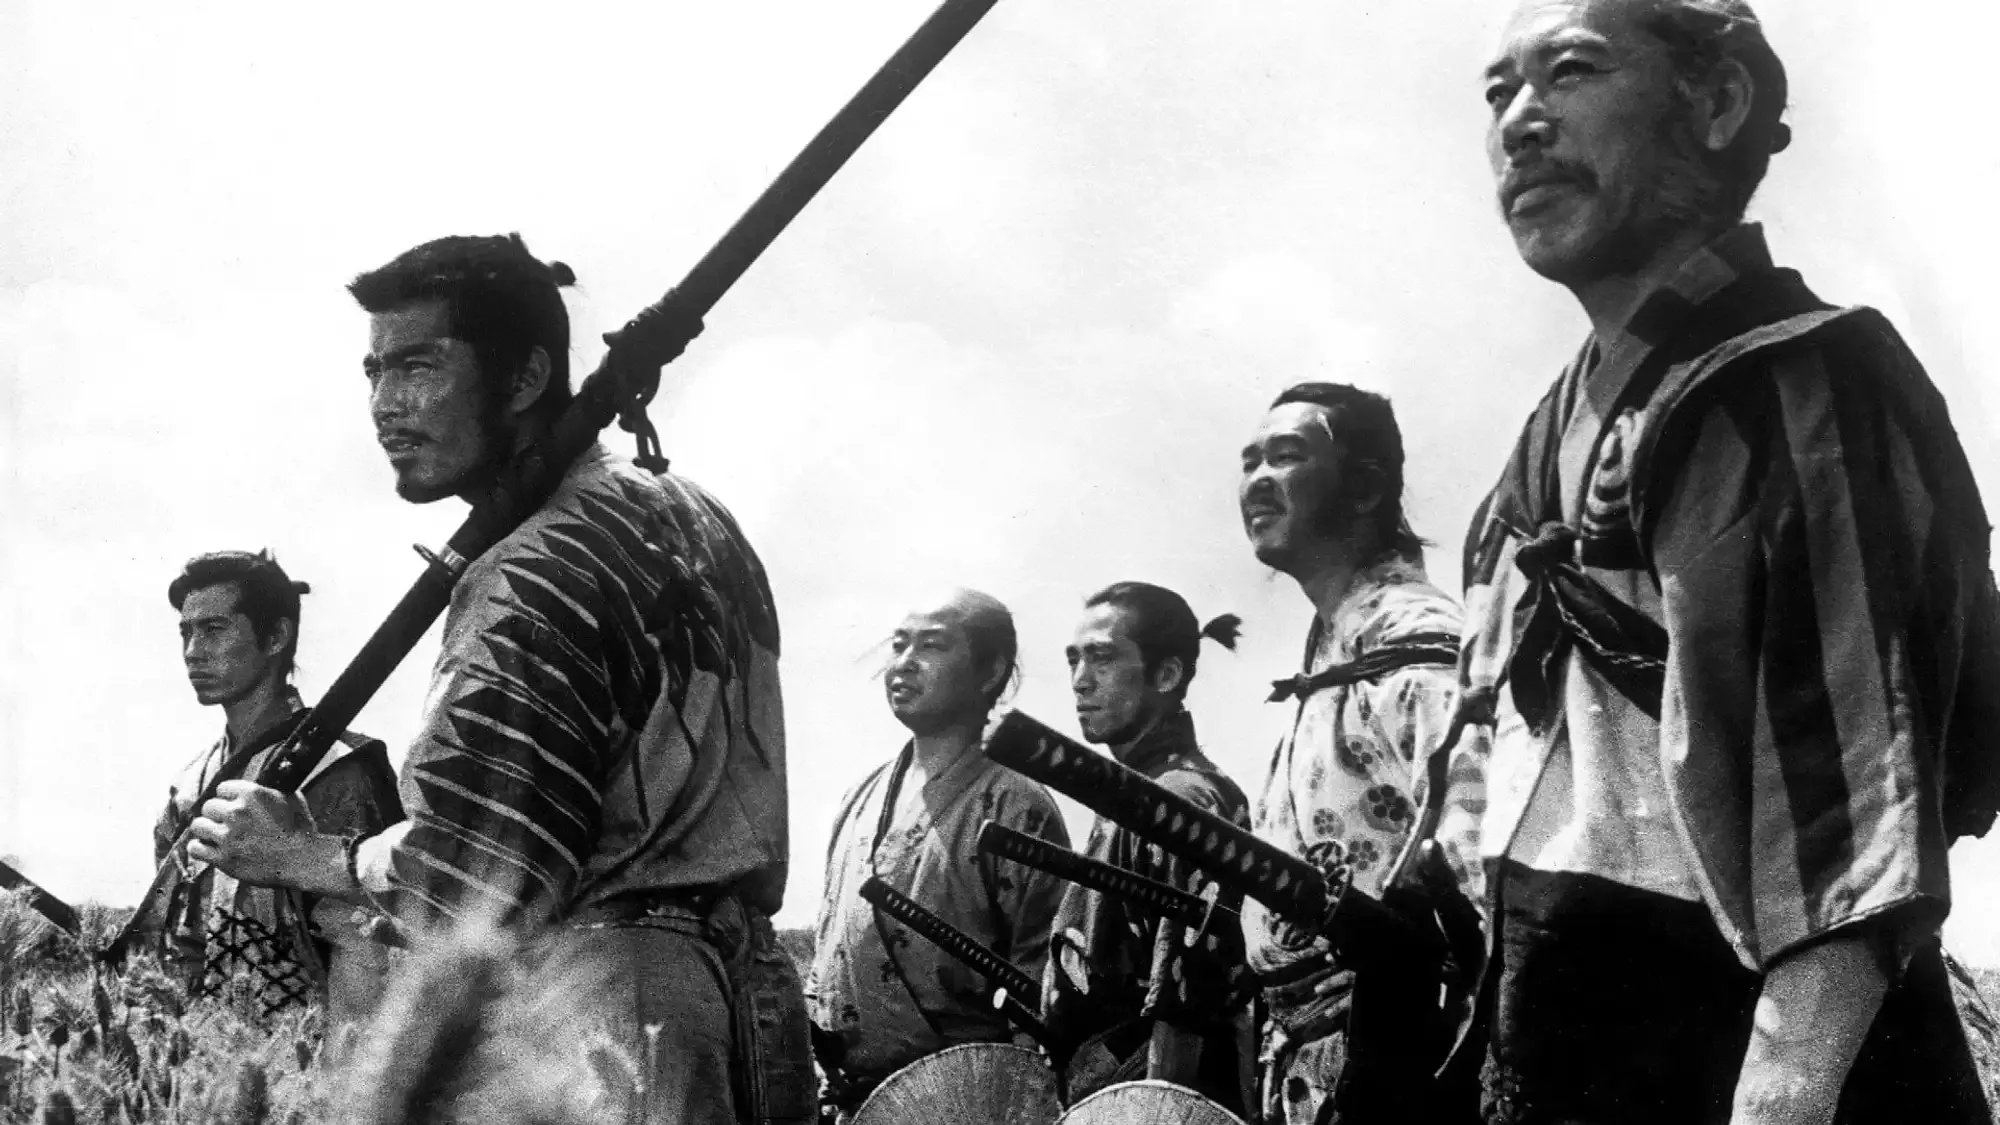 Seven Samurai movie review